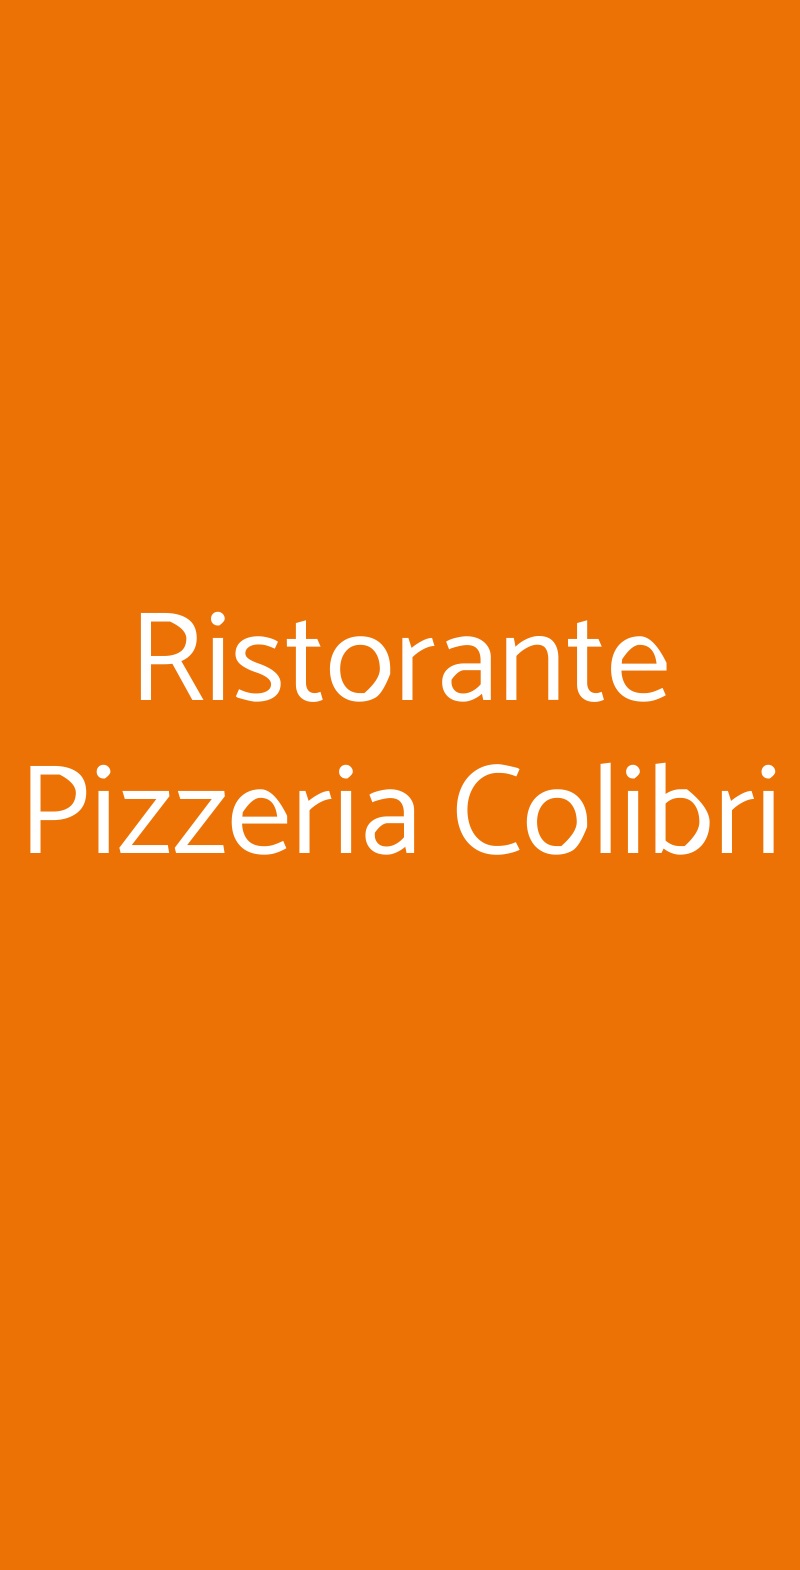 Ristorante Pizzeria Colibri Torino menù 1 pagina